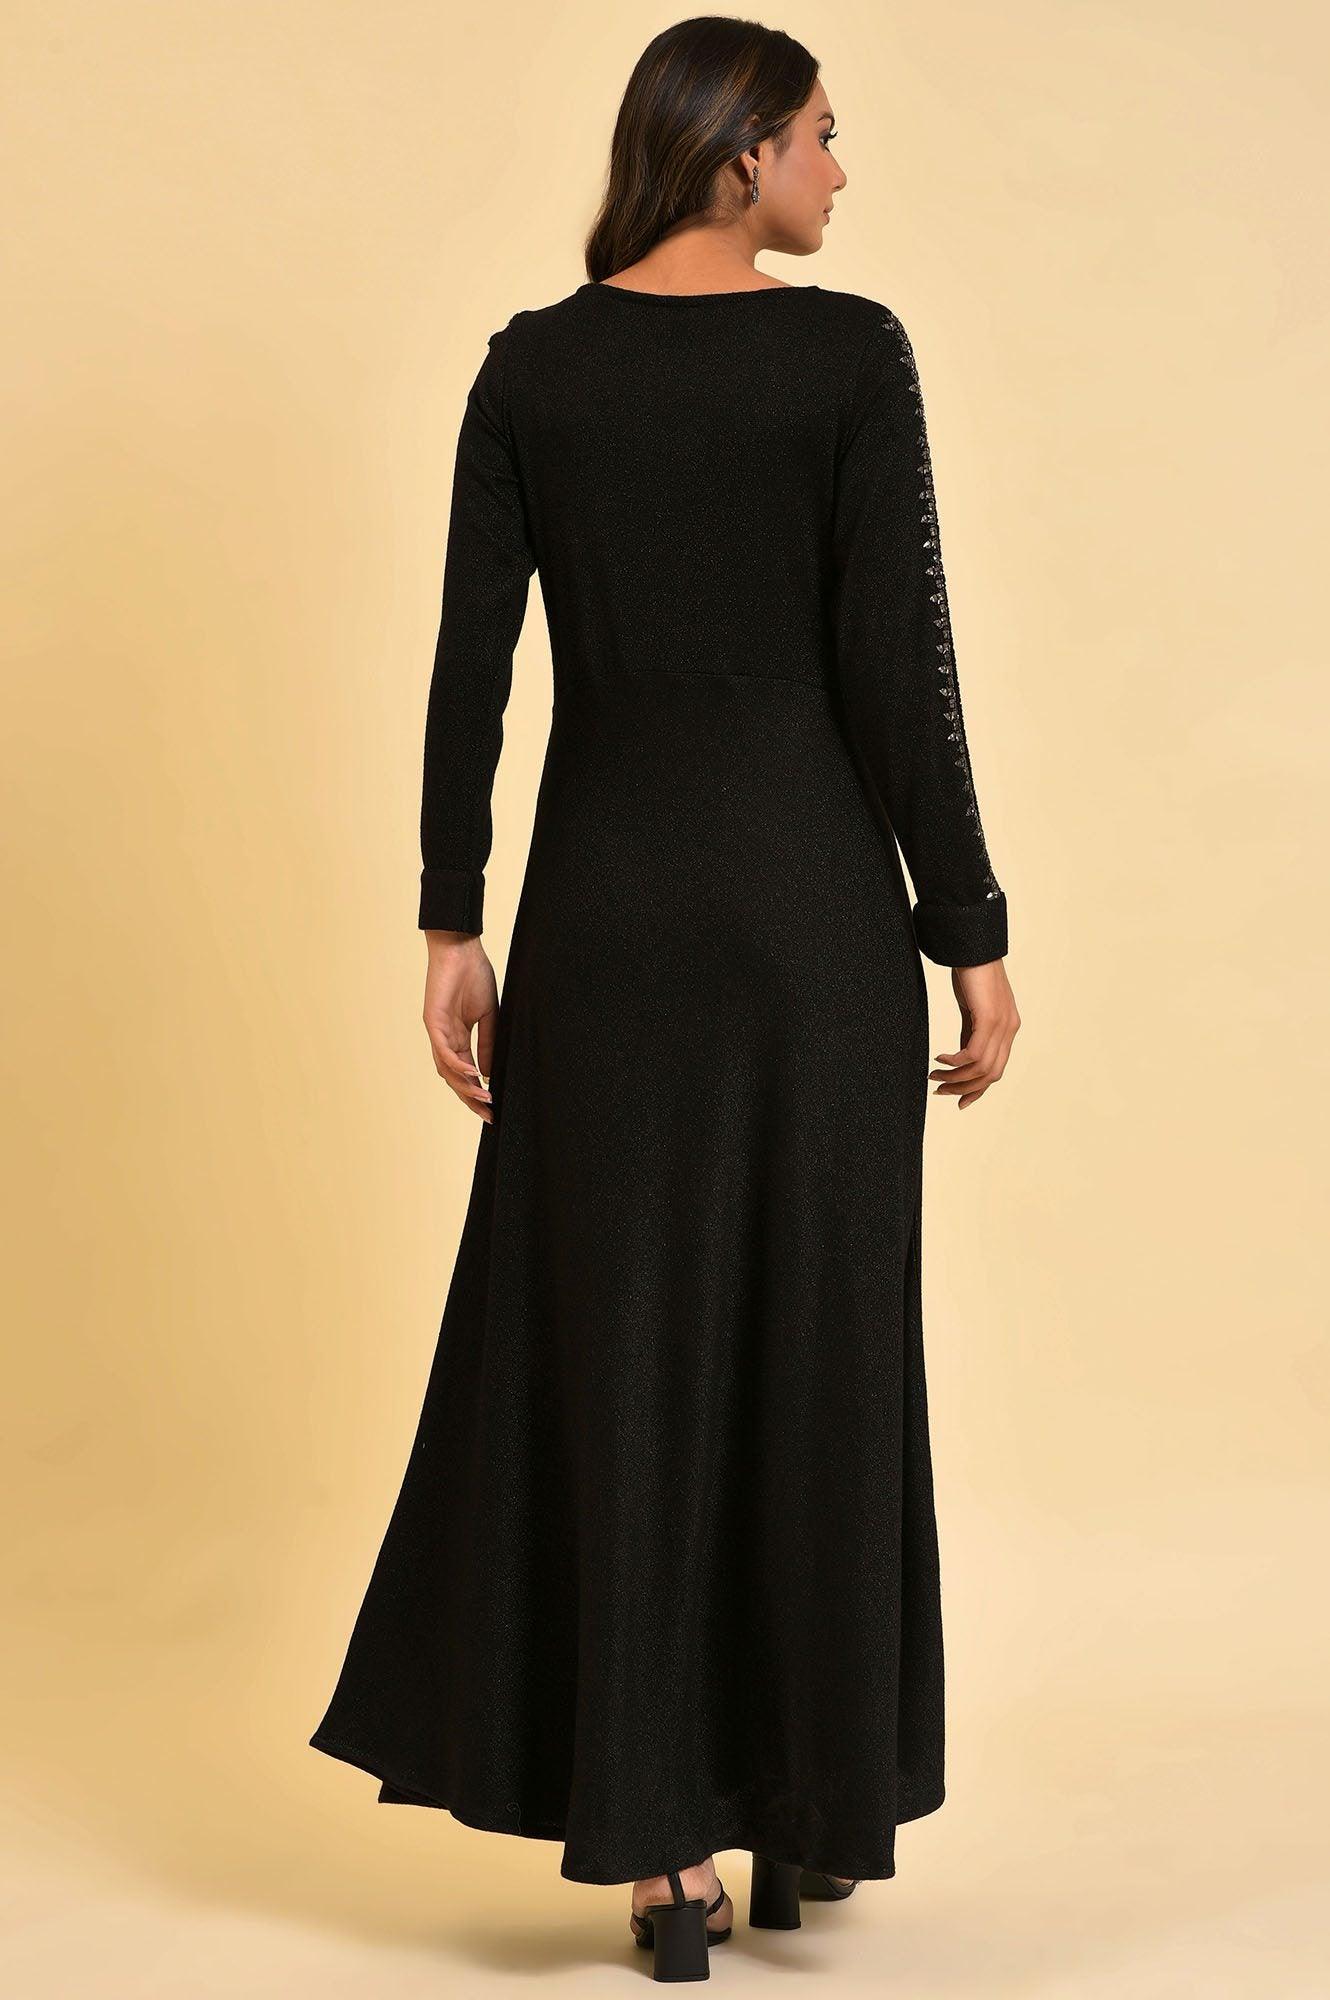 Black Full Length Embellished Dress - wforwoman